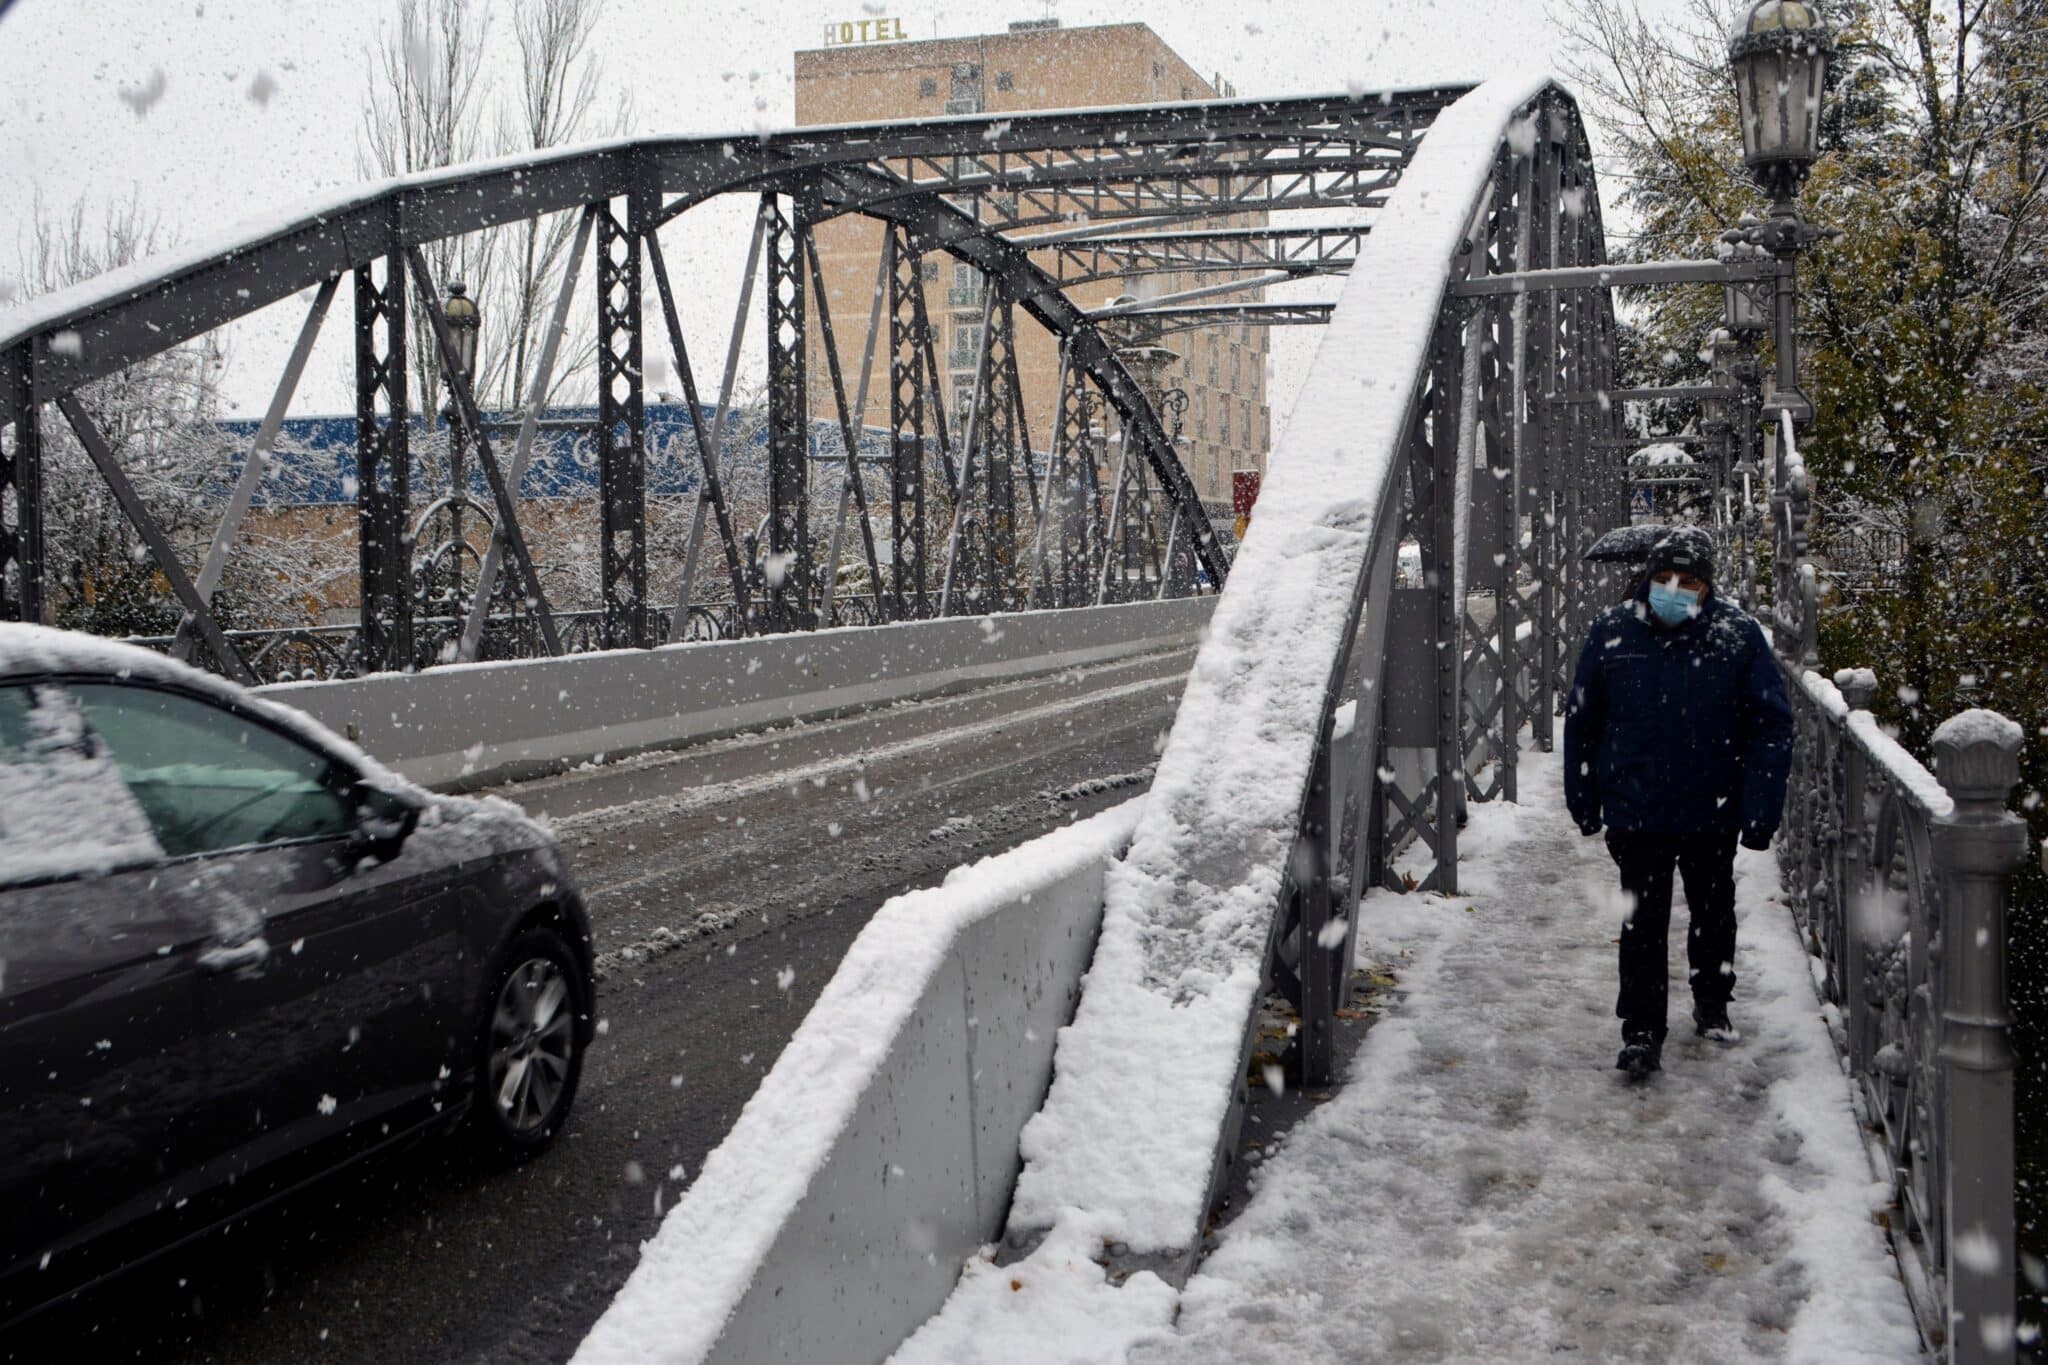 La nieve cae de forma copiosa en la capital palentina provocando problemas para el tráfico y los peatones desde primeras horas de este miércoles.